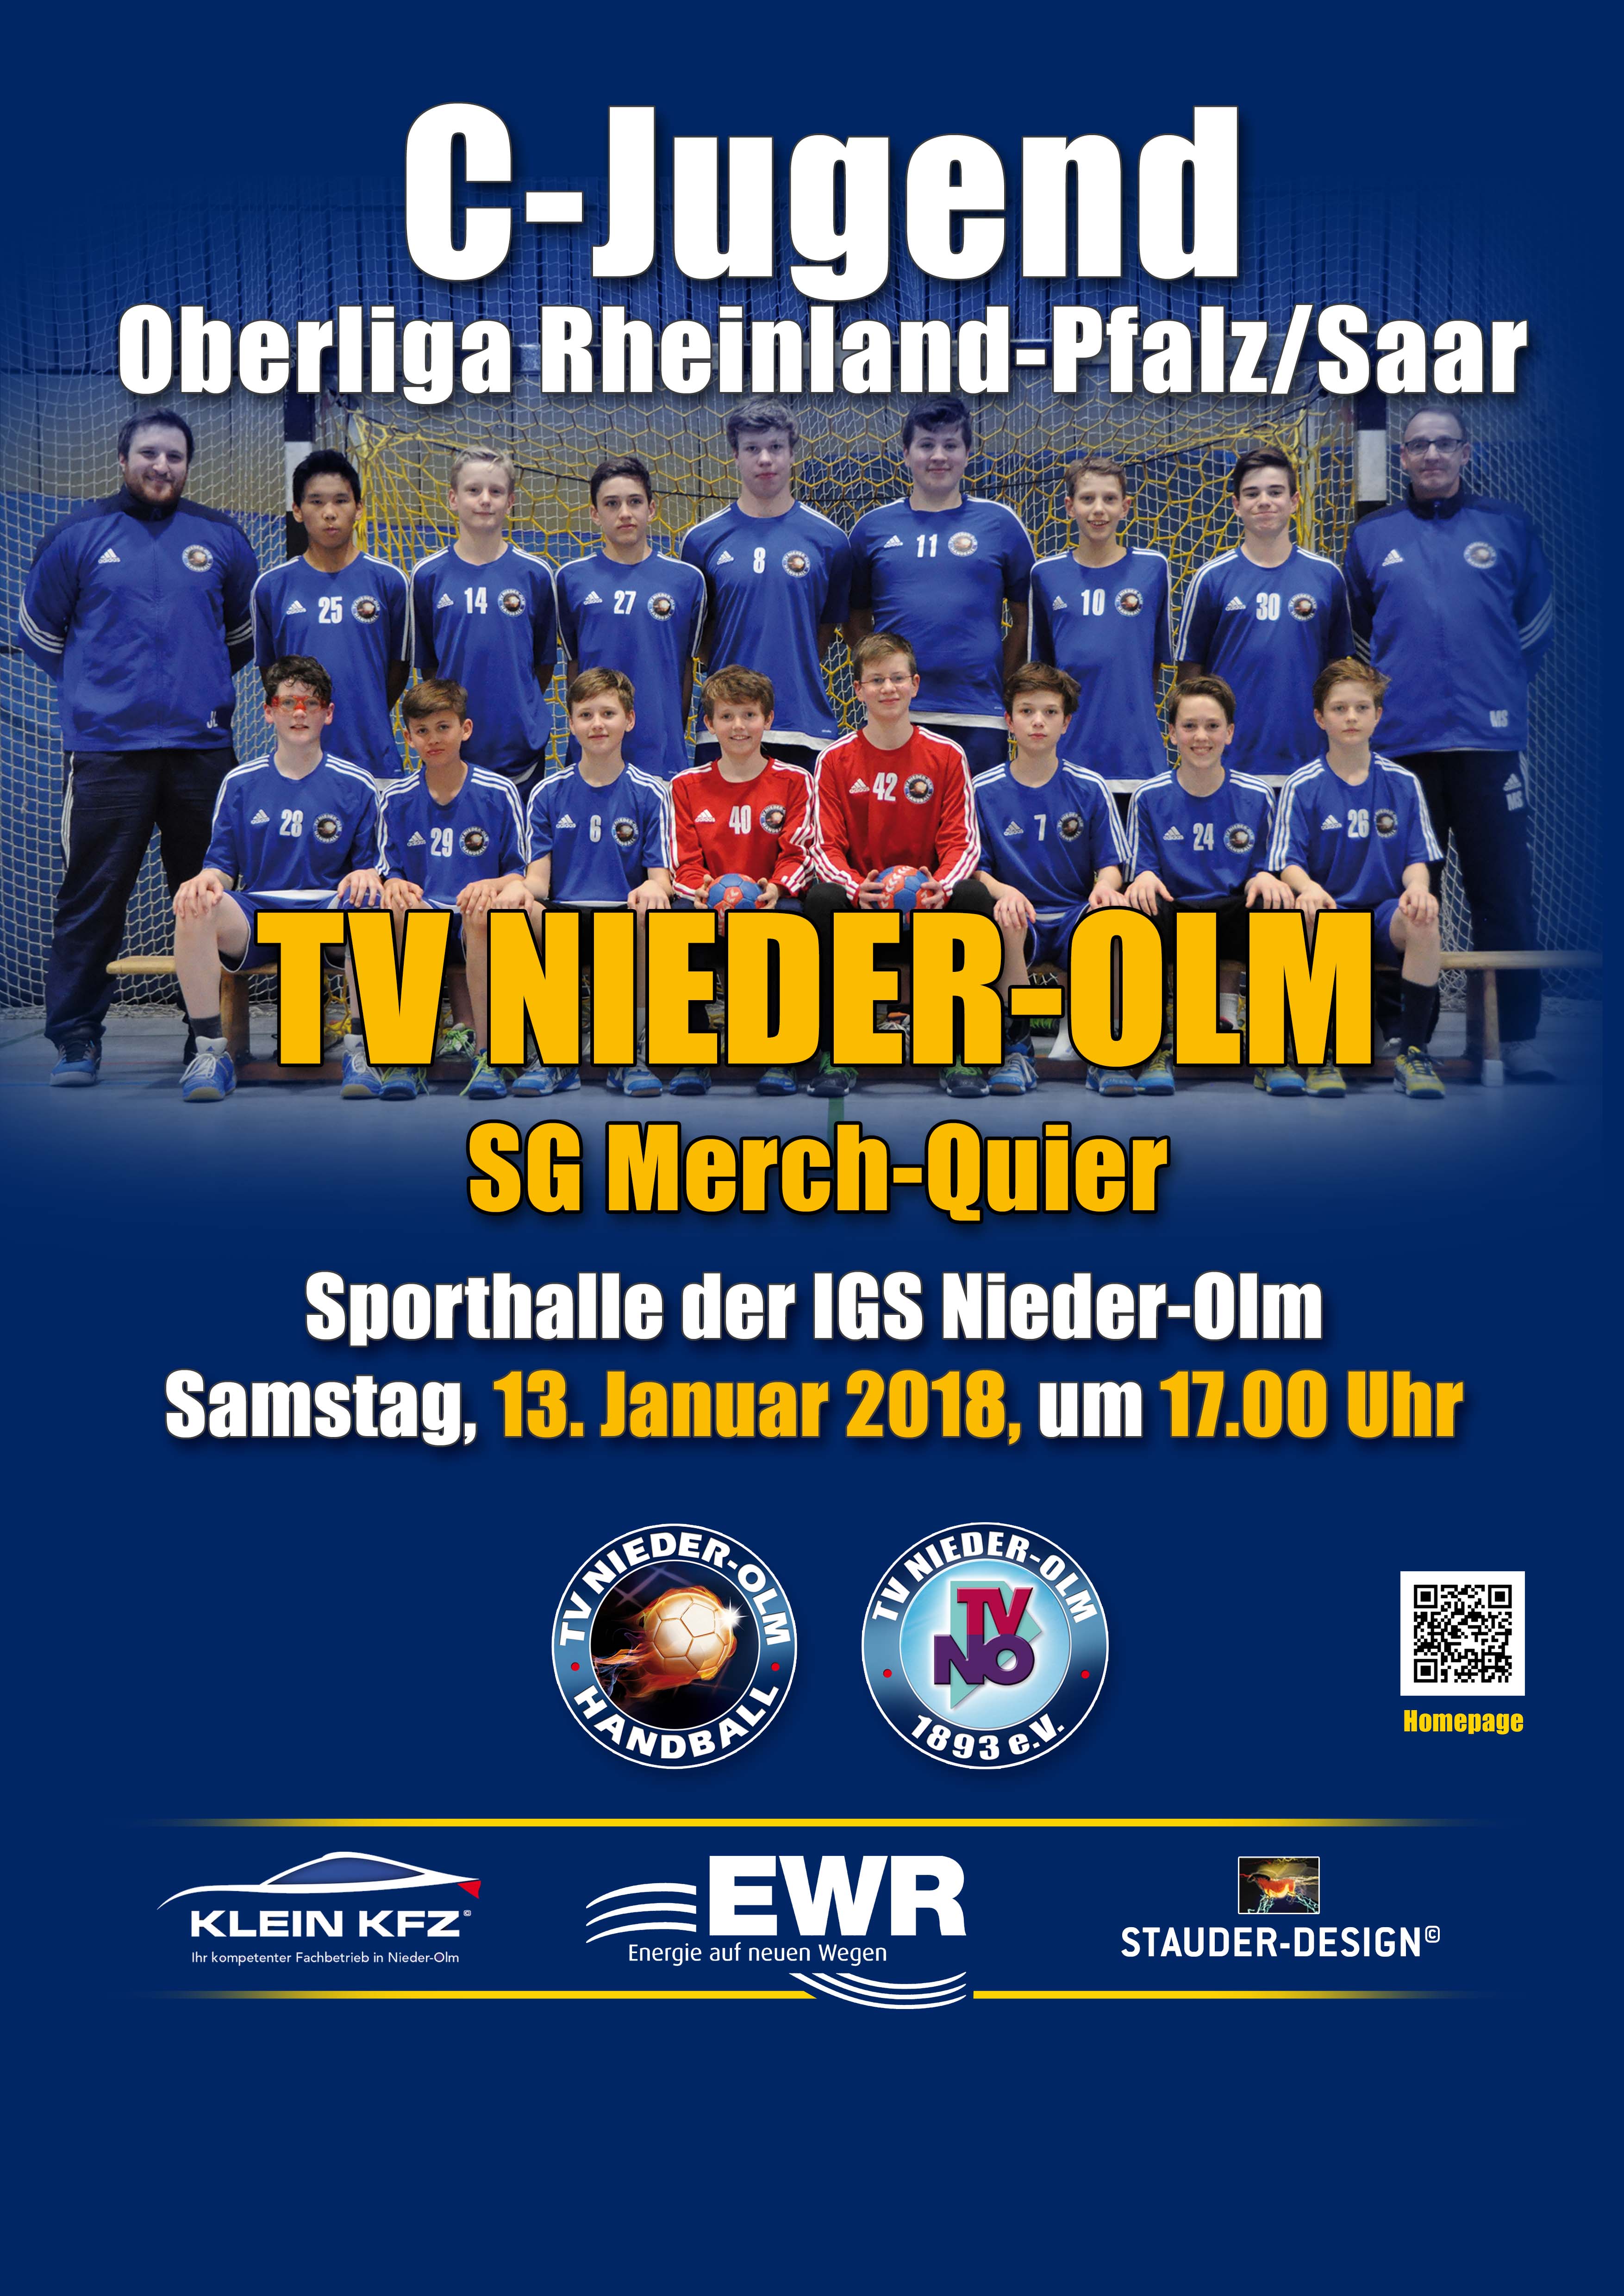 Tipp für Samstag! Spiel um die Tabellenführung in der C-Jugend Oberliga!